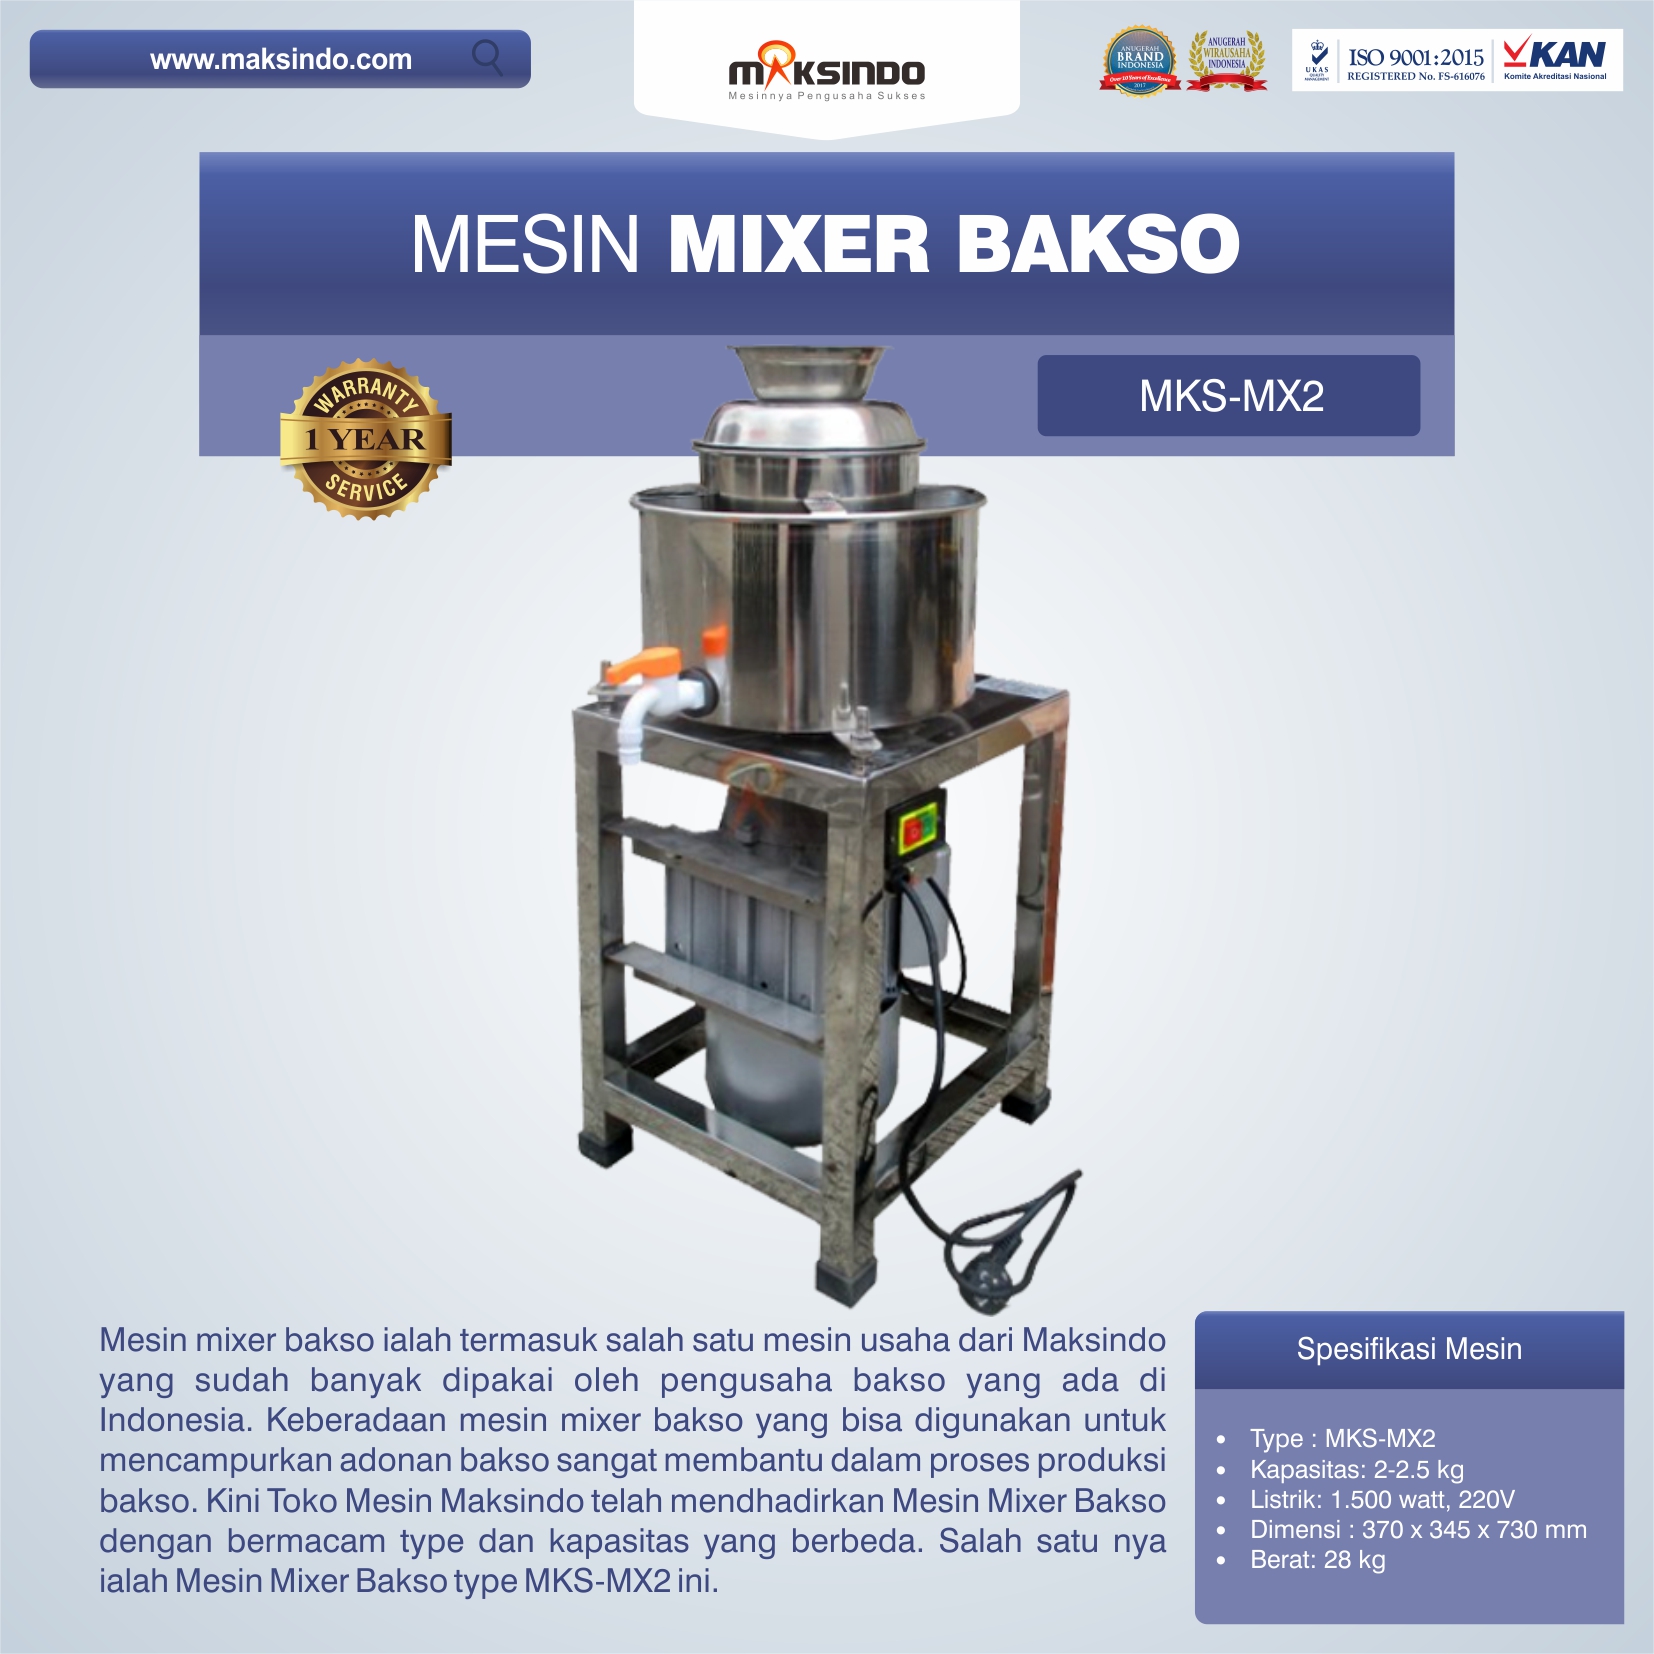 Jual Mesin Mixer Bakso MKS-MX2 di Medan